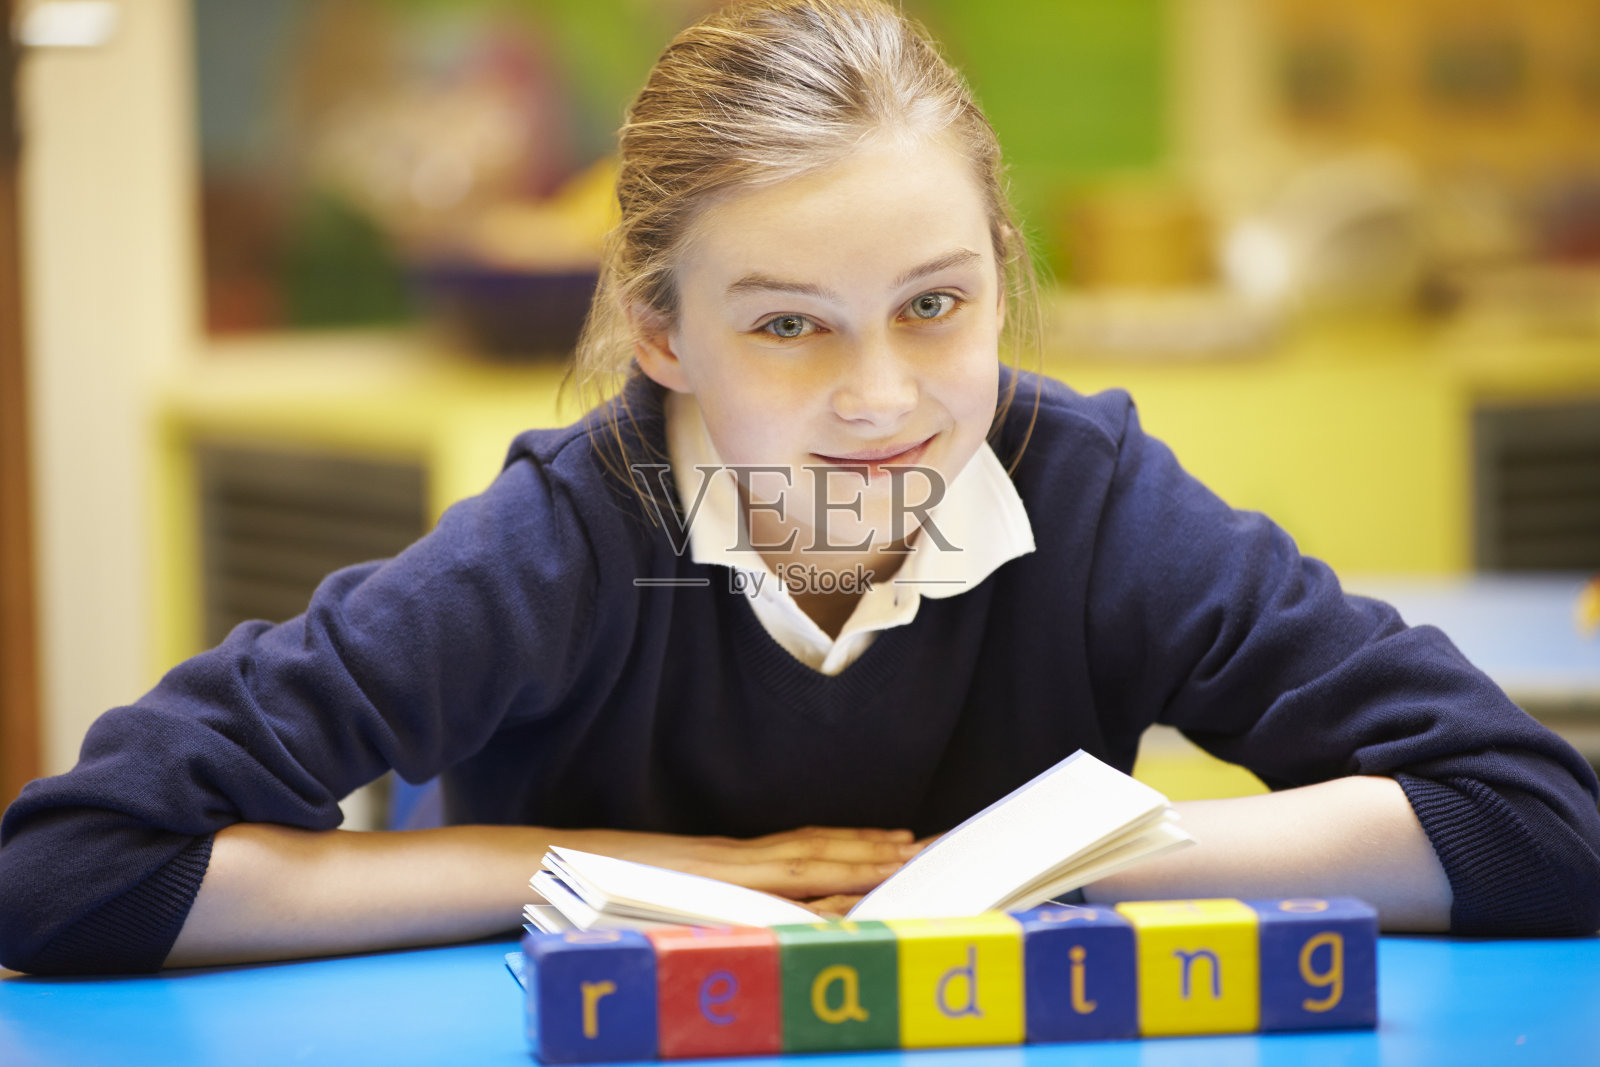 单词“Learning”在小学生后面的木块中拼写照片摄影图片